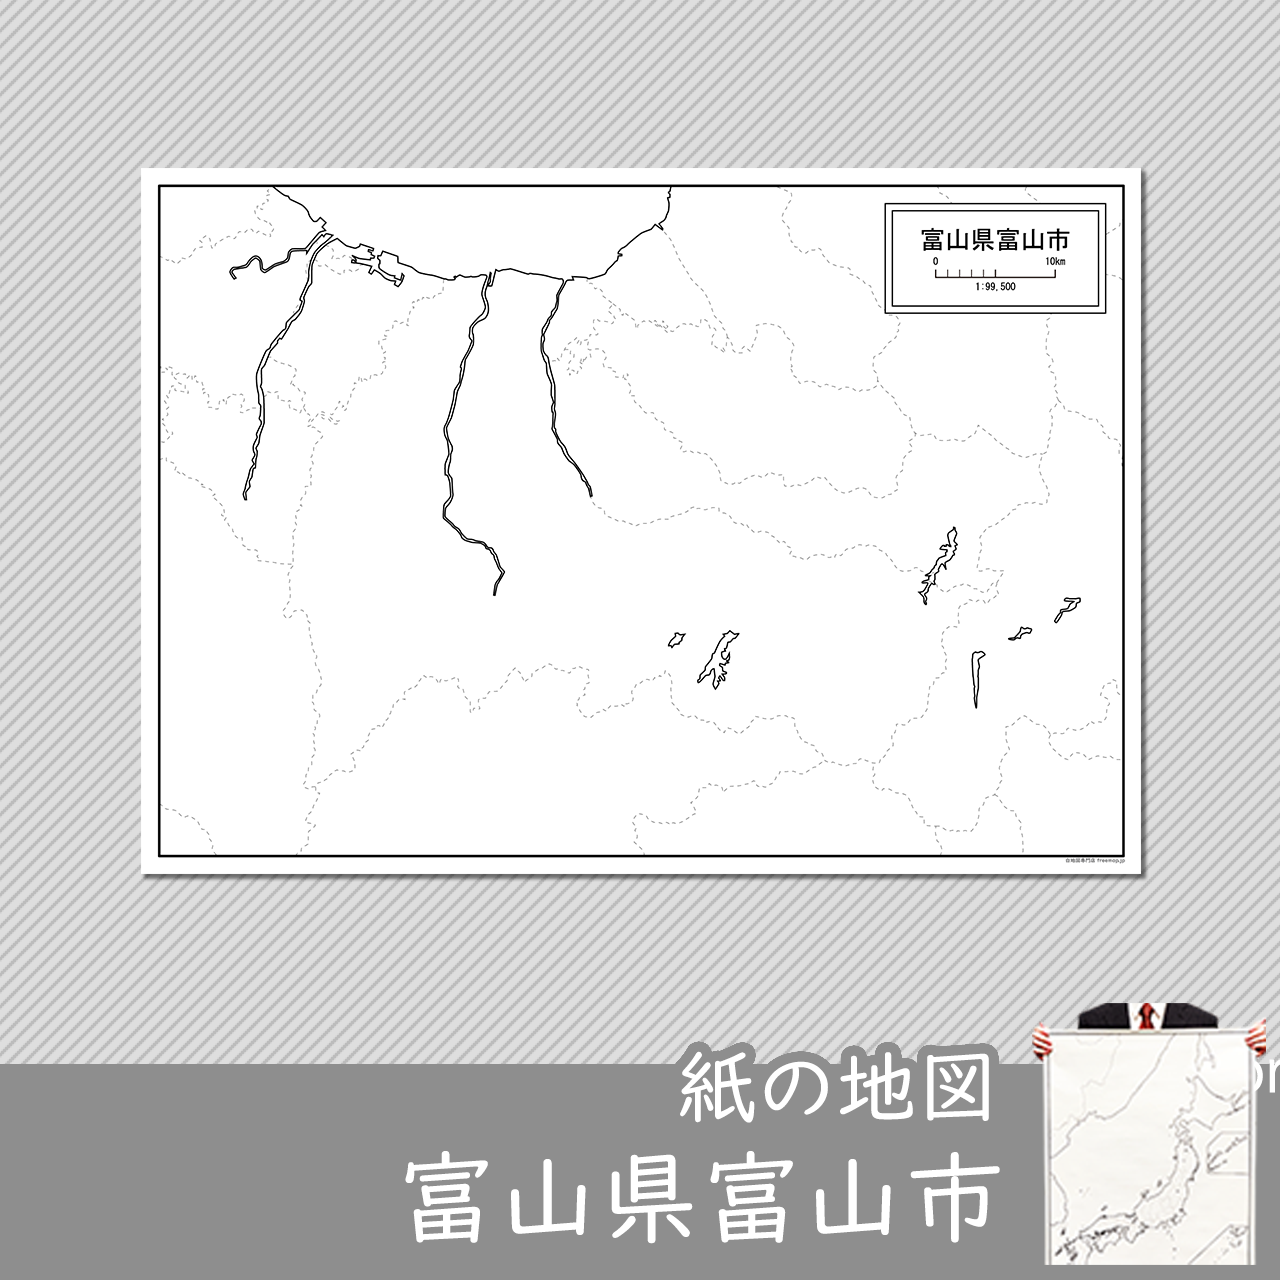 富山市の紙の白地図のサムネイル